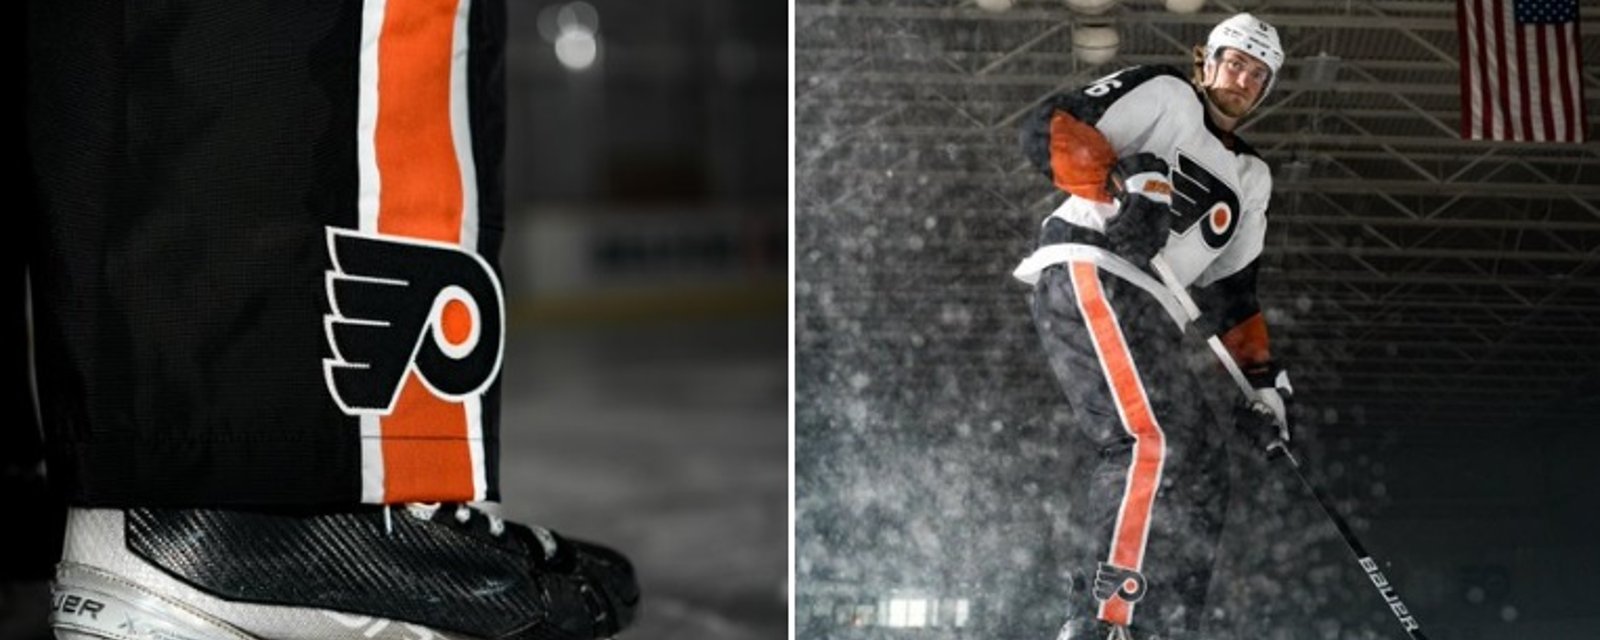 Les Flyers ramènent les pantalons de hockey!